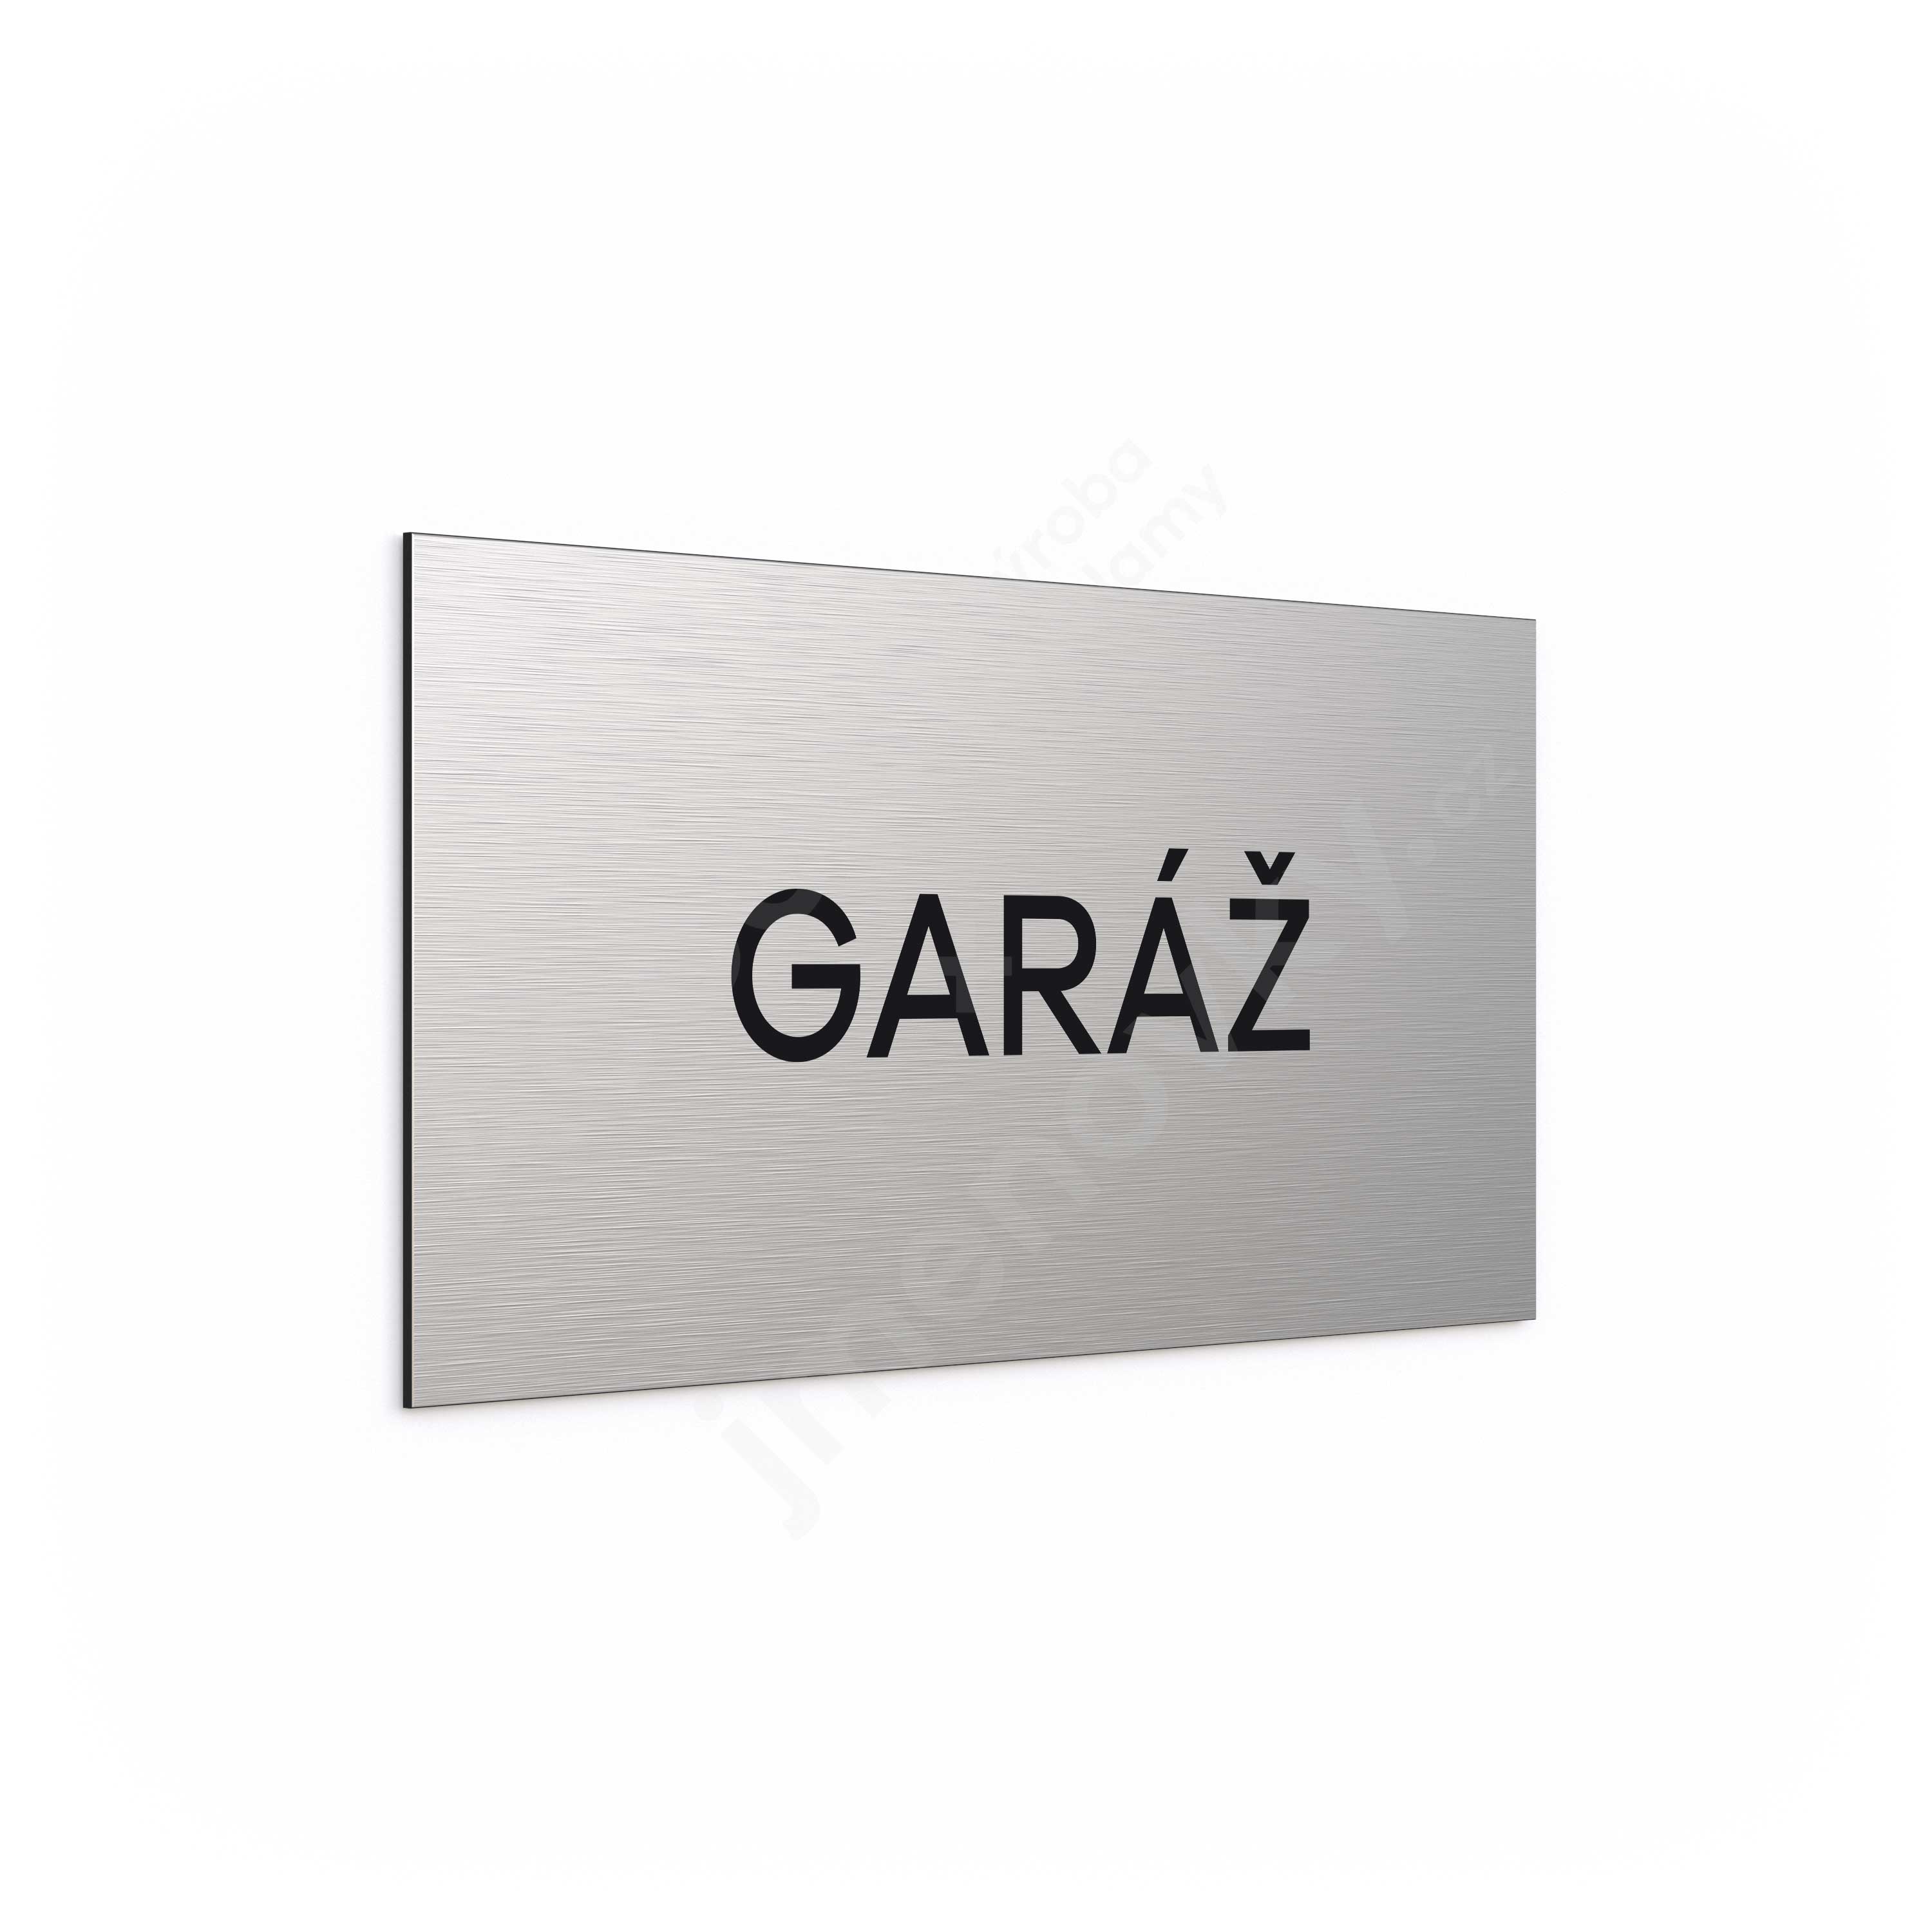 Oznaen podla "GAR" (300 x 150 mm)